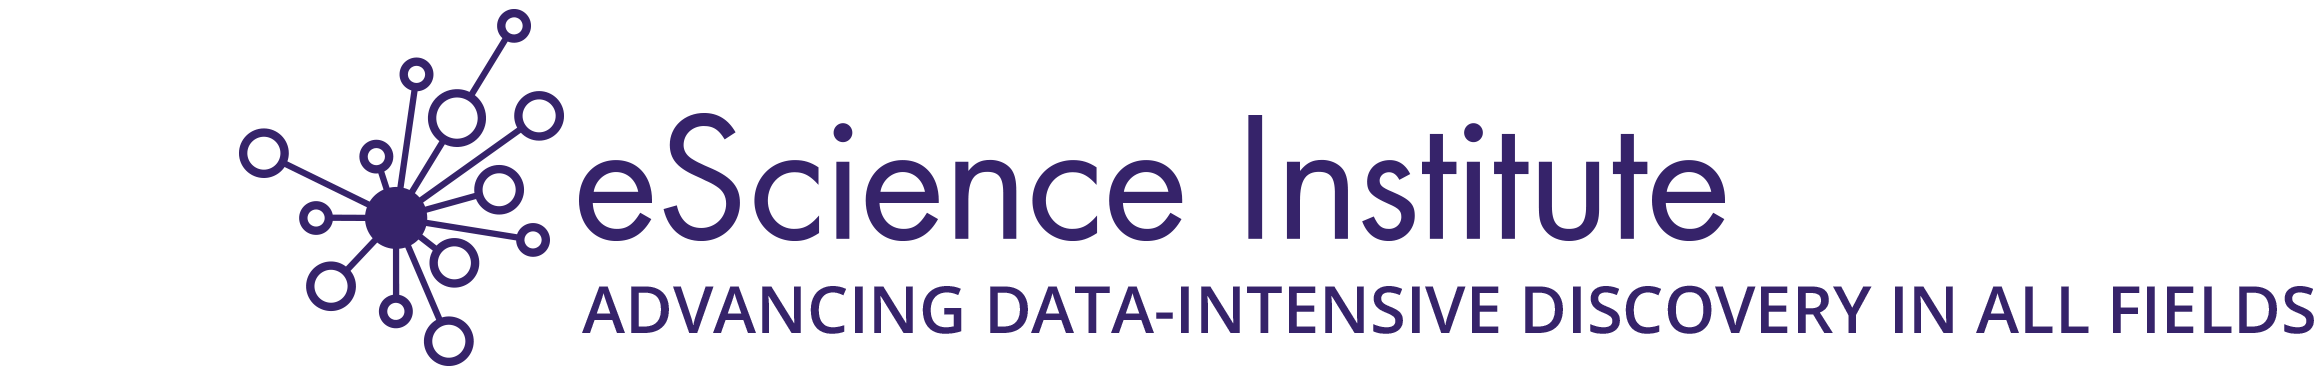 eScience Institute Logo